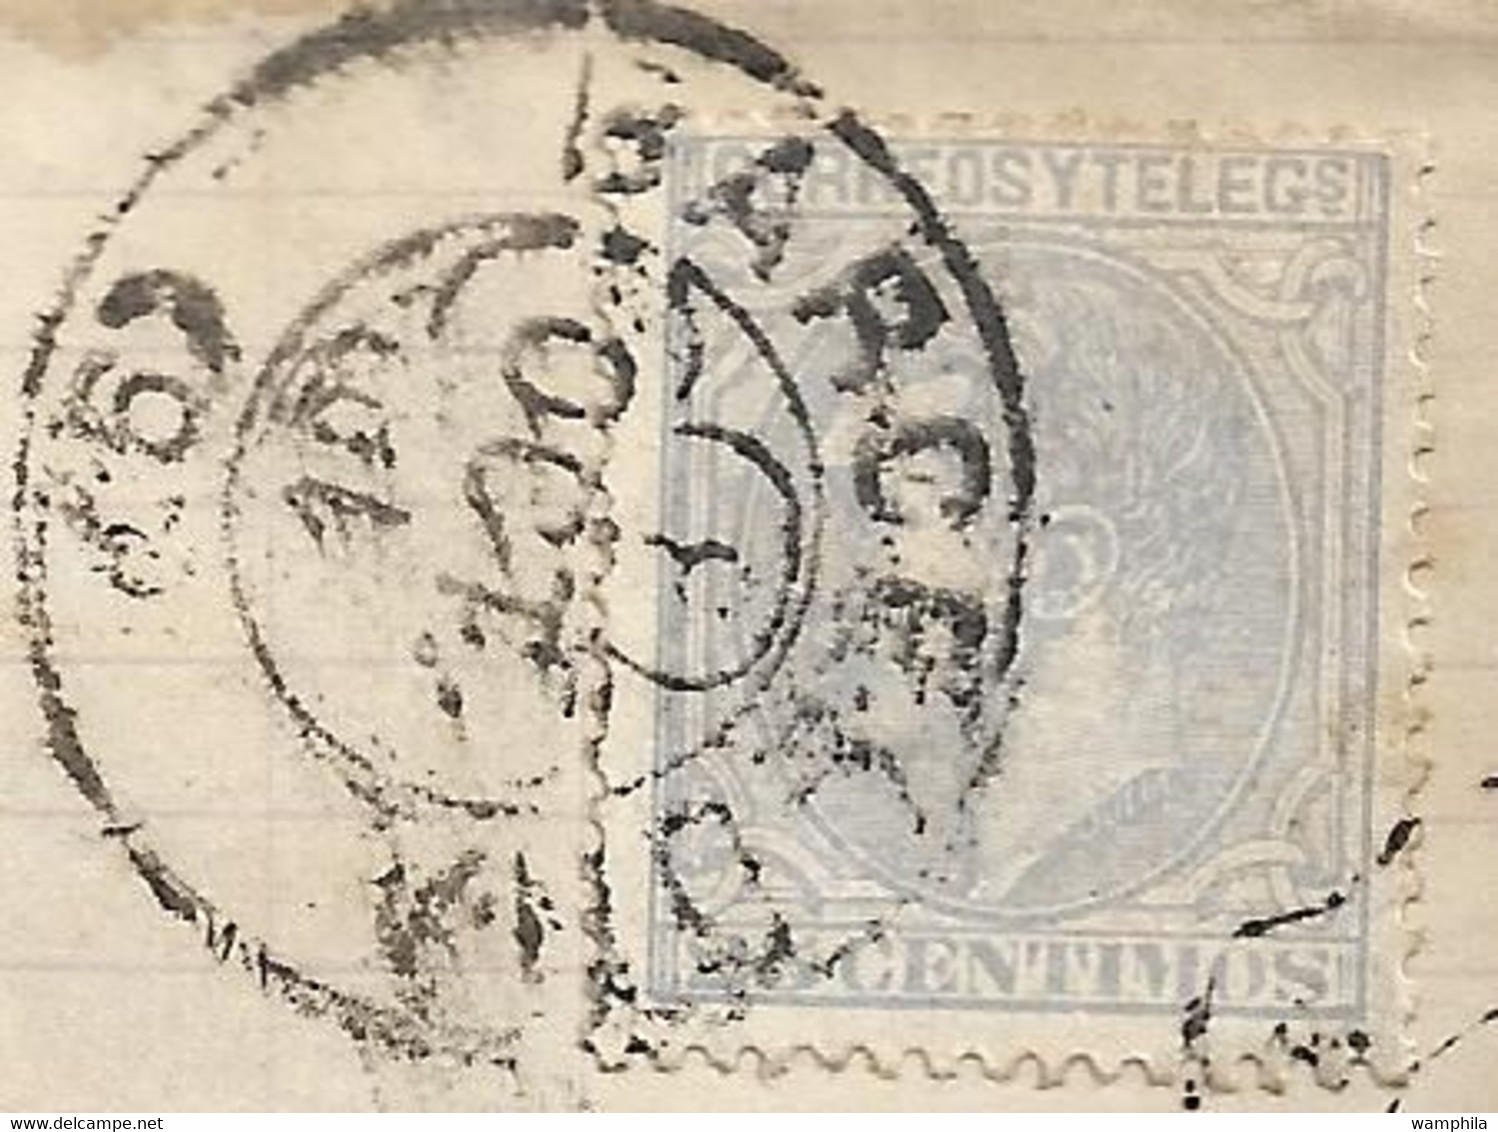 lot de 6 lettres d'Espagne pour la France entre 1867 et 1881 toutes scannées